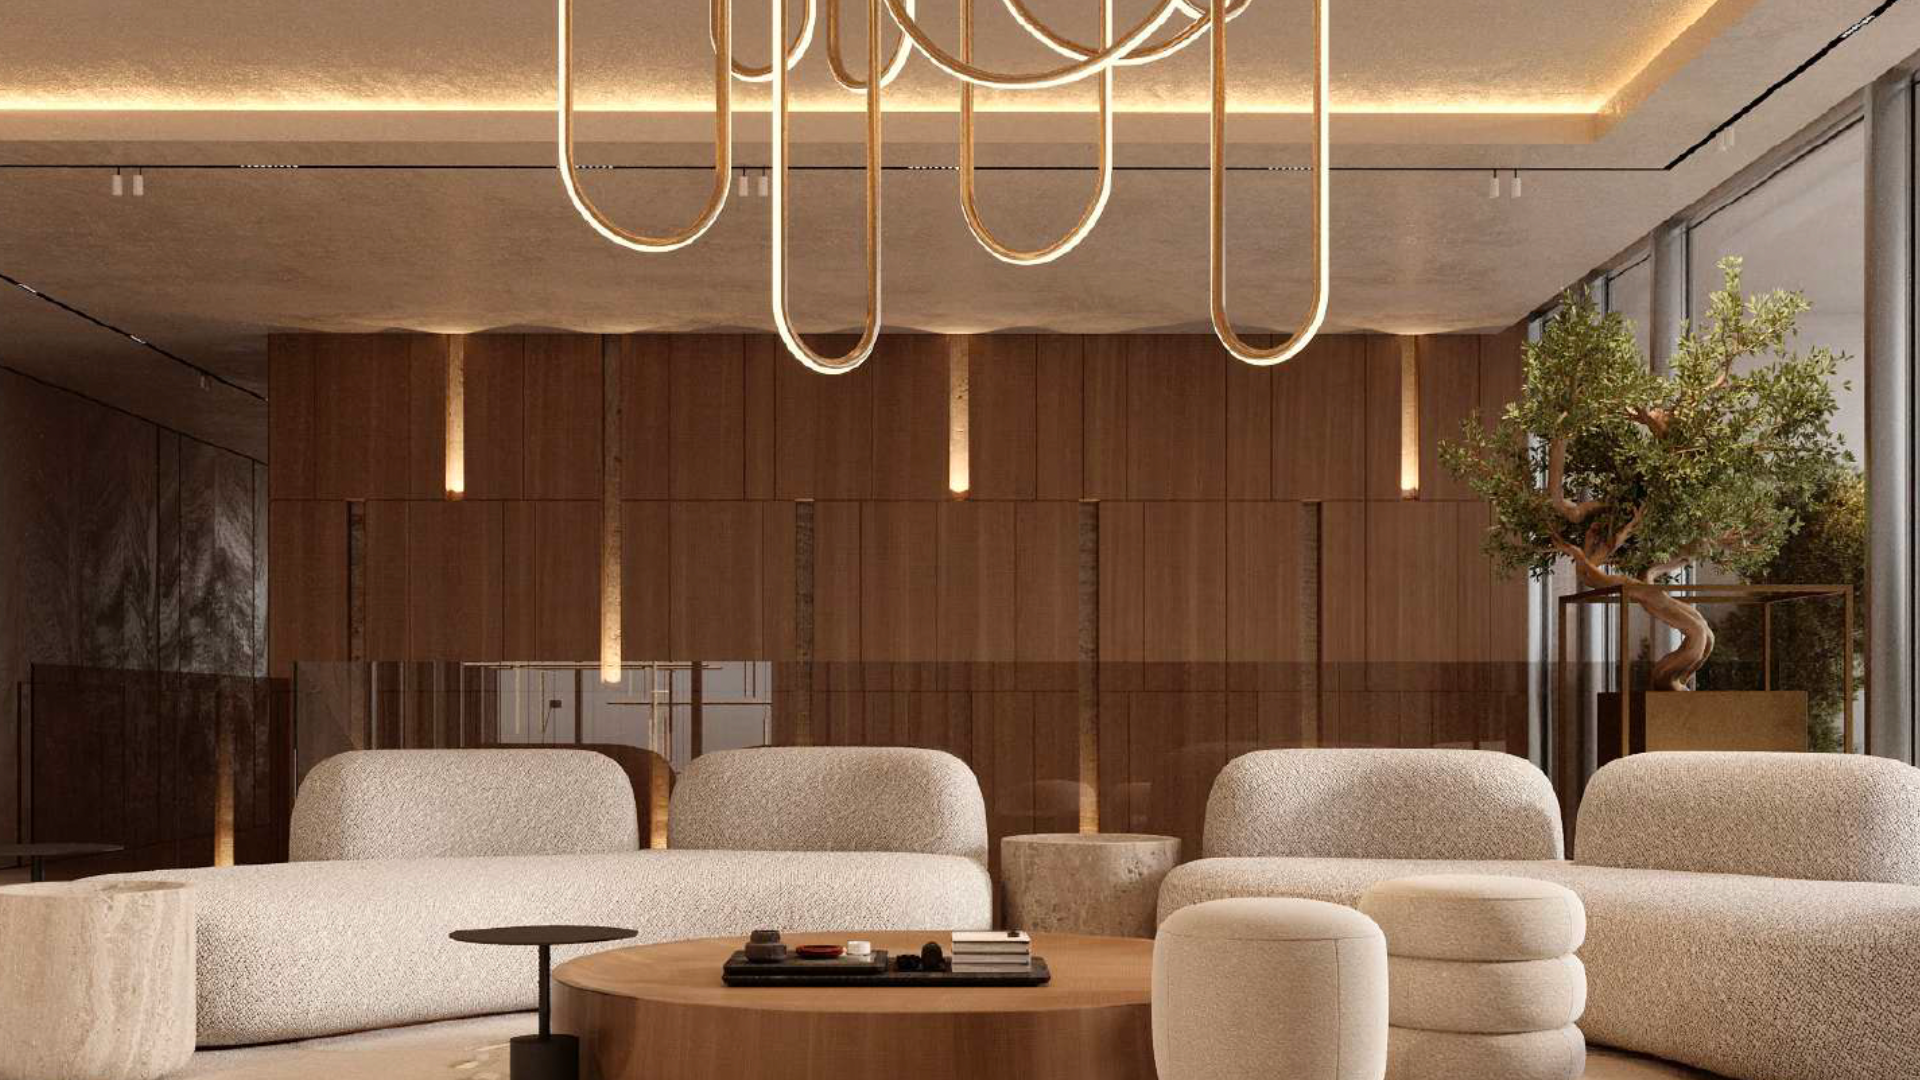 Salon moderne dans une villa de Dubaï avec de luxueux canapés beiges, des murs en bois et d'élégants lustres à boucles dorées. Un petit arbre en pot ajoute une touche de verdure à l'espace.